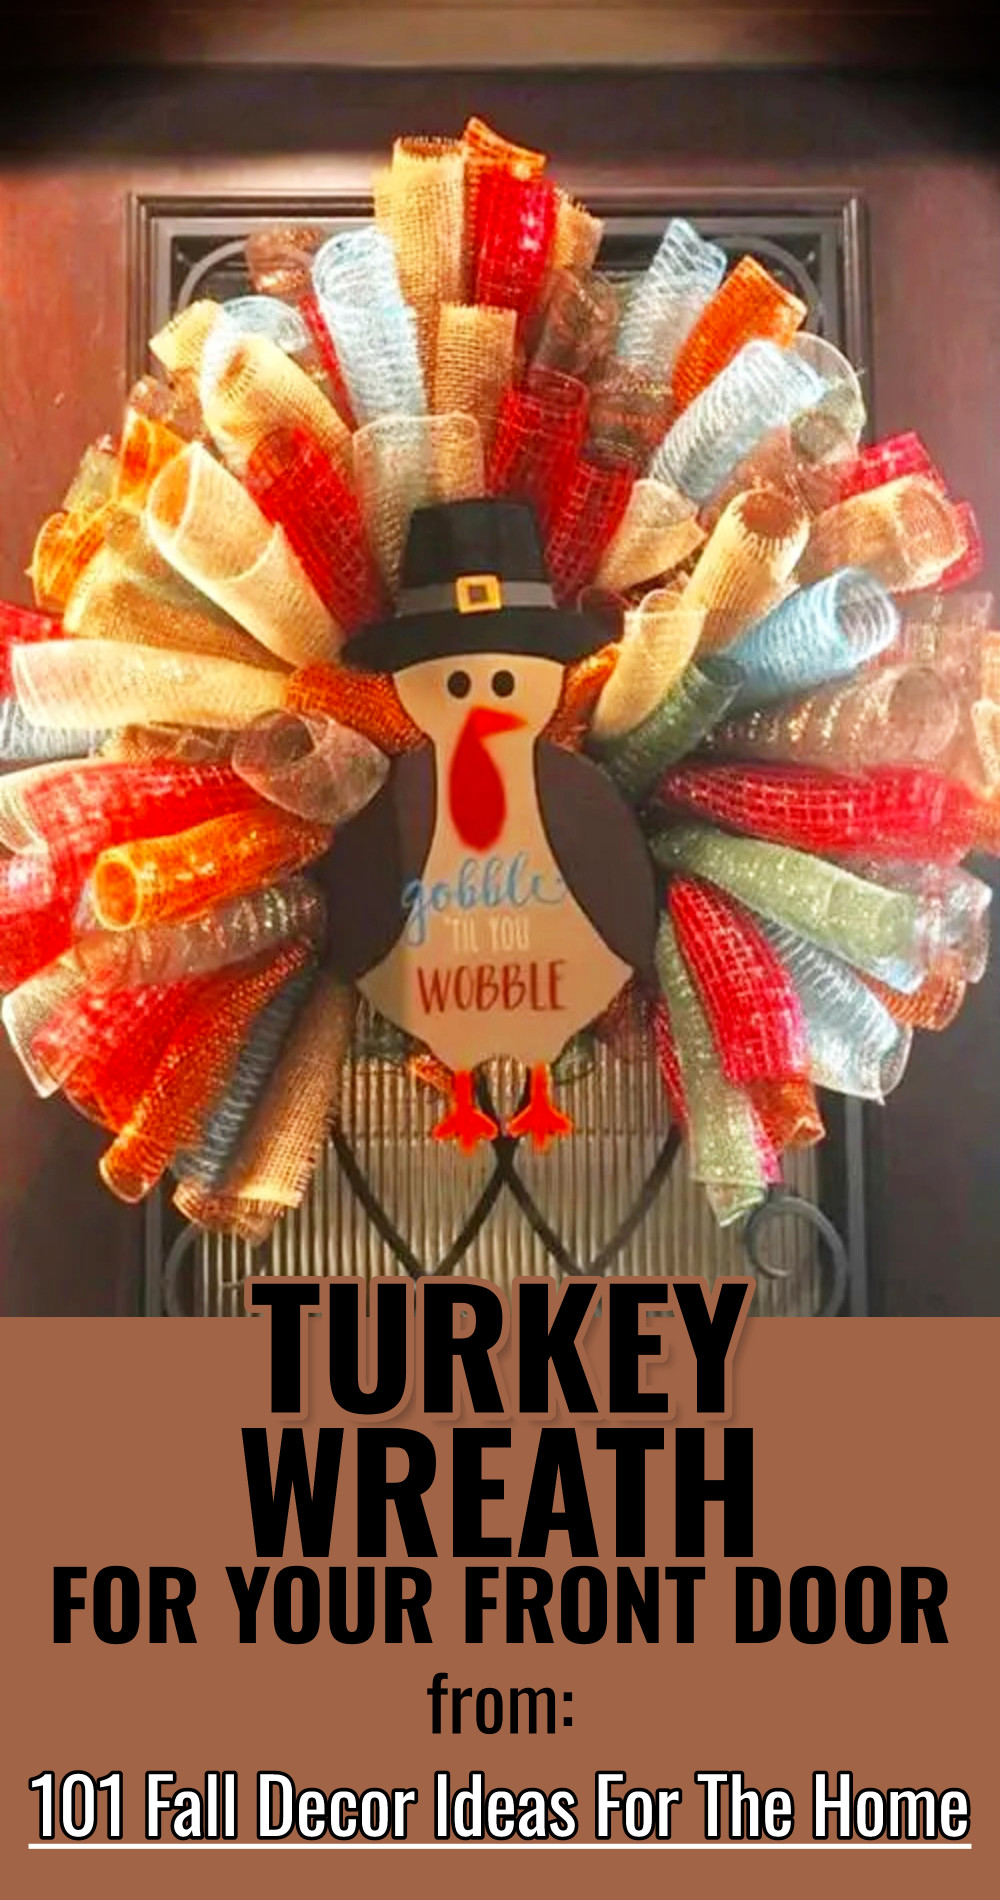 DIY Turkey Wreath For The Front Door